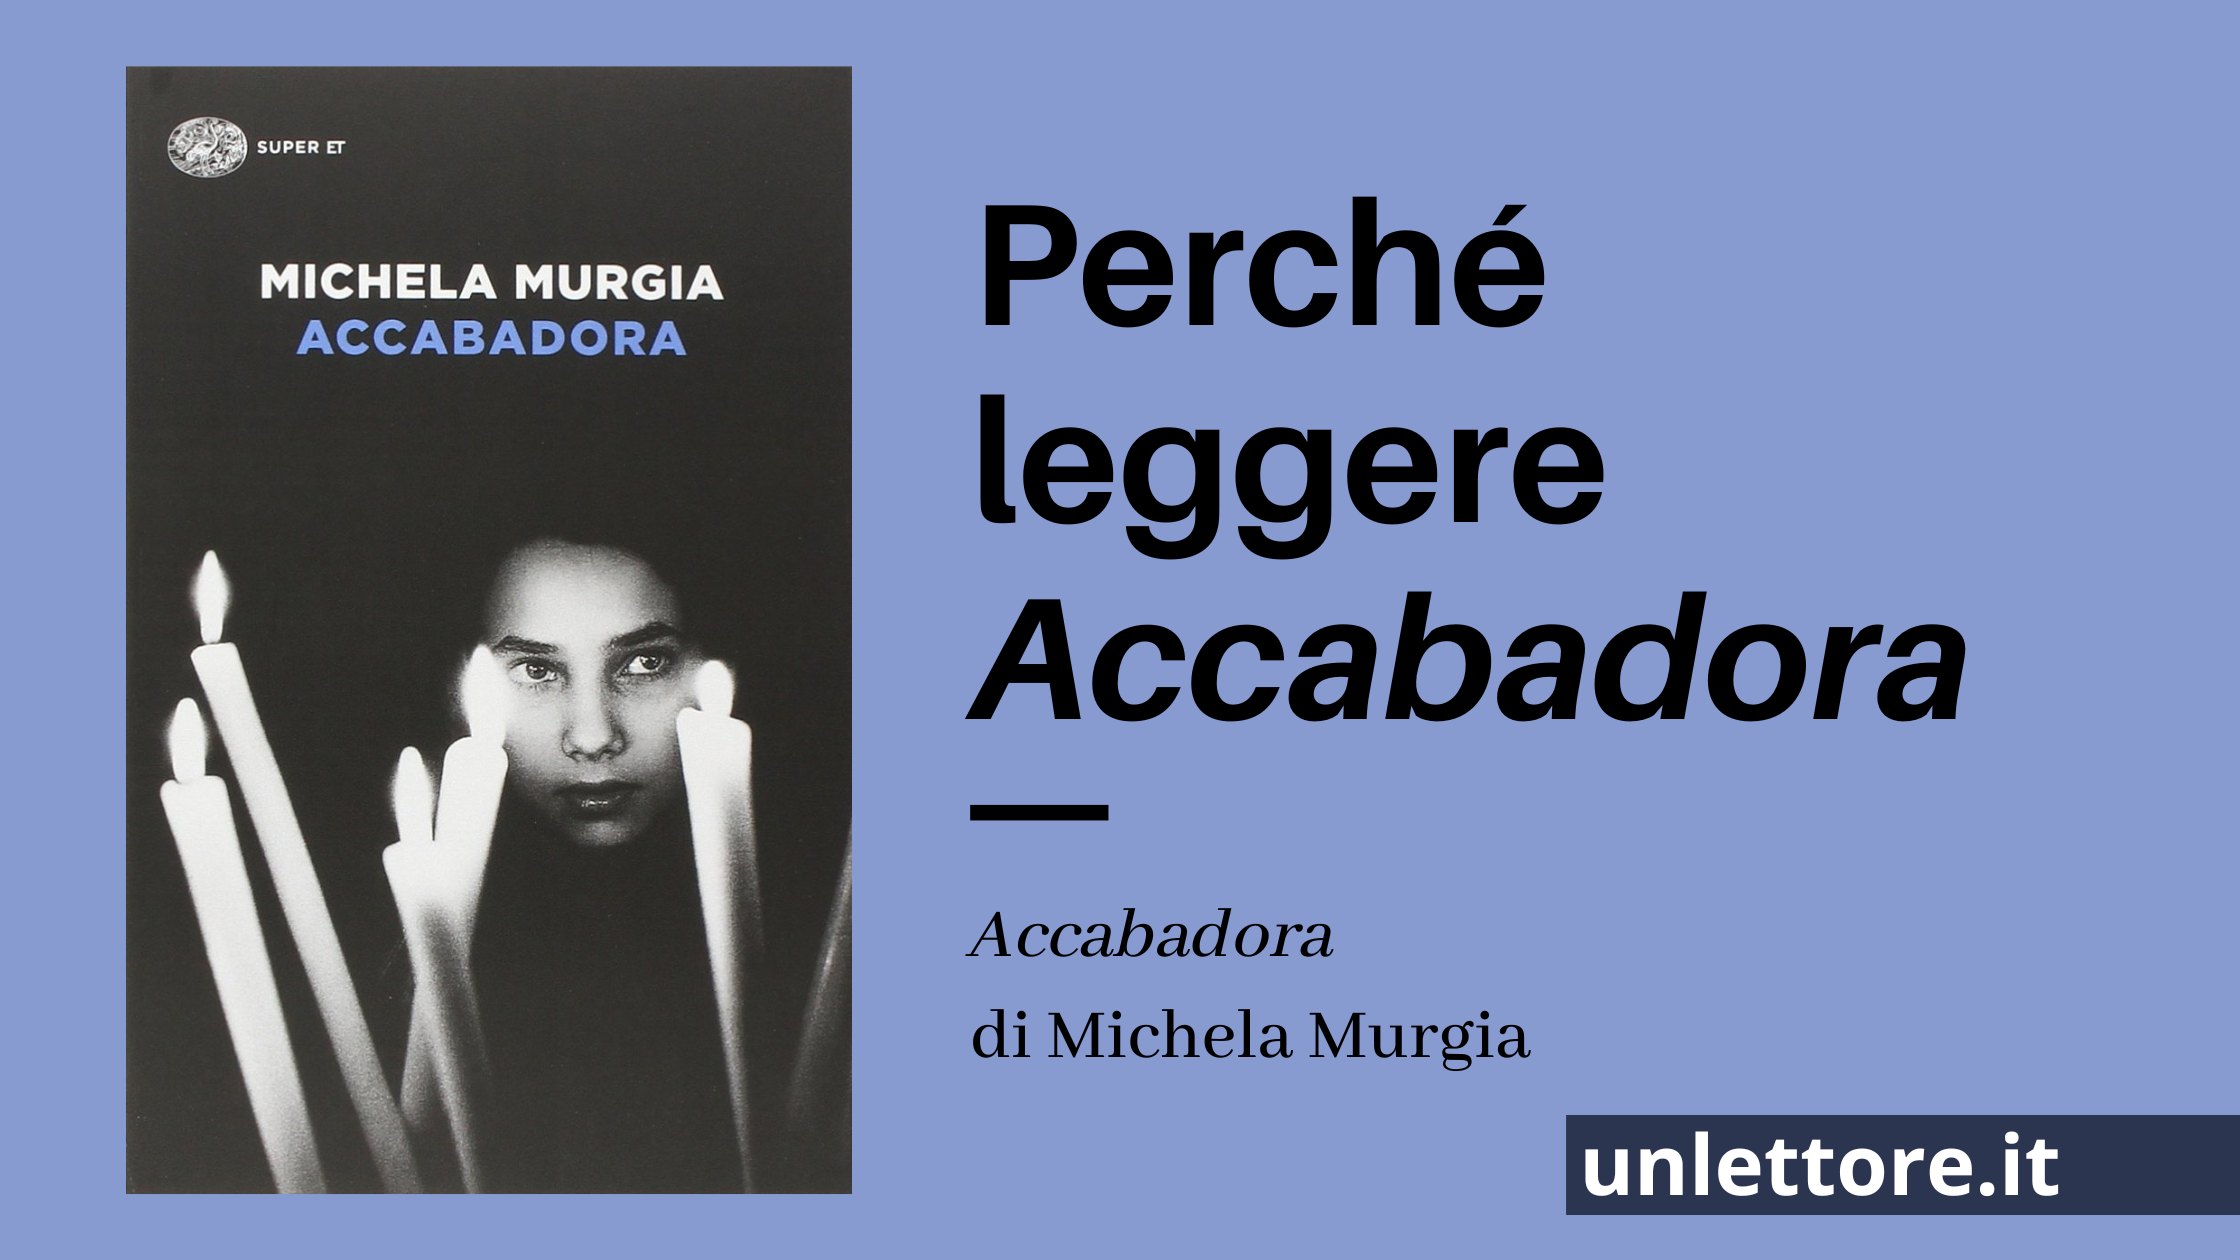 Michela Murgia e “Accabadora”, cosa ne penso – Un lettore